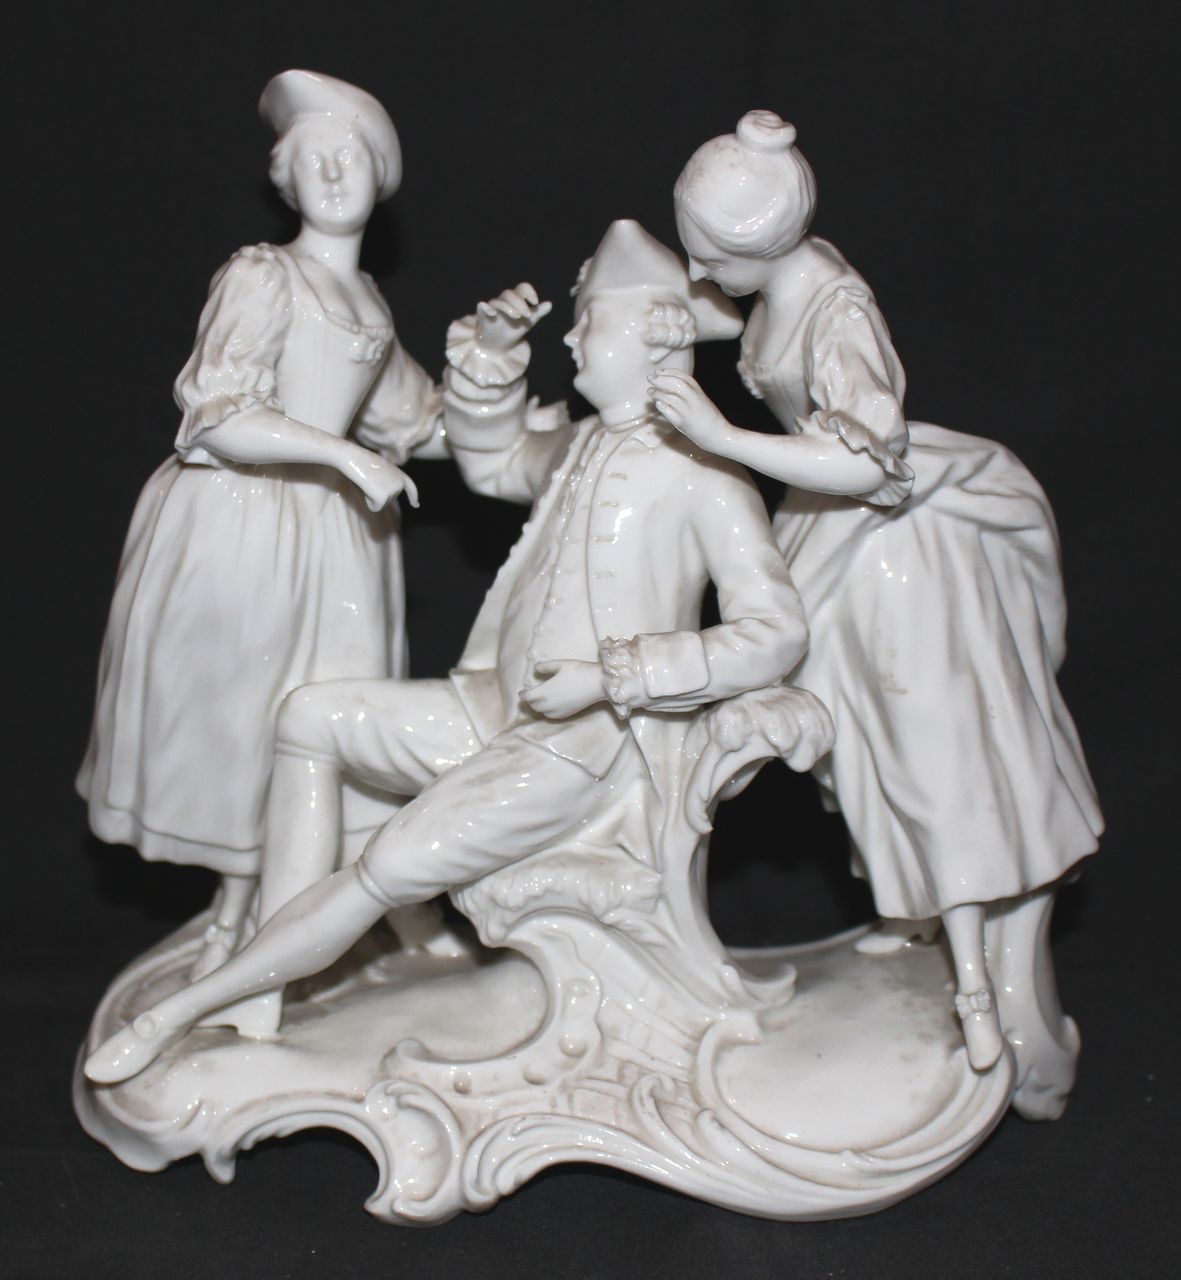 due giovani donne in dialogo con un gentiluomo seduto (gruppo scultoreo) di Fasold & Stauch, Bock-Wallendorf, Lichte (Turingia) - manifattura turingia (sec. XX)